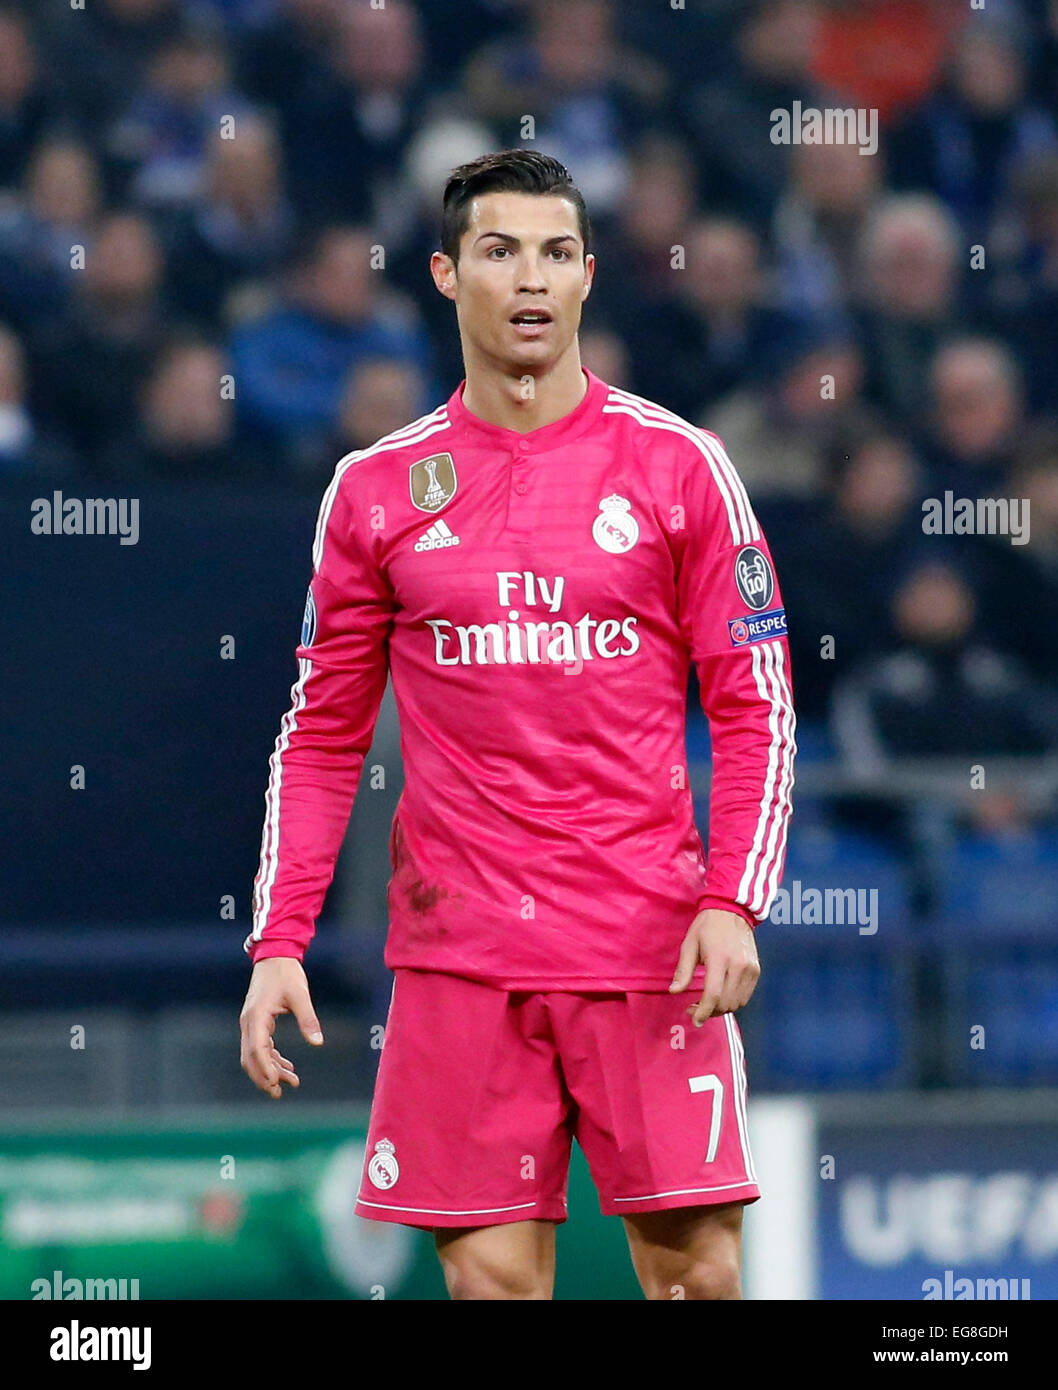 Cristiano Ronaldo (Real Madrid) au cours de la Ligue des Champions entre le FC Schalke 04 et le Real Madrid, Veltins Arena à Gelsenkirchen le 18 février., 2015. Banque D'Images